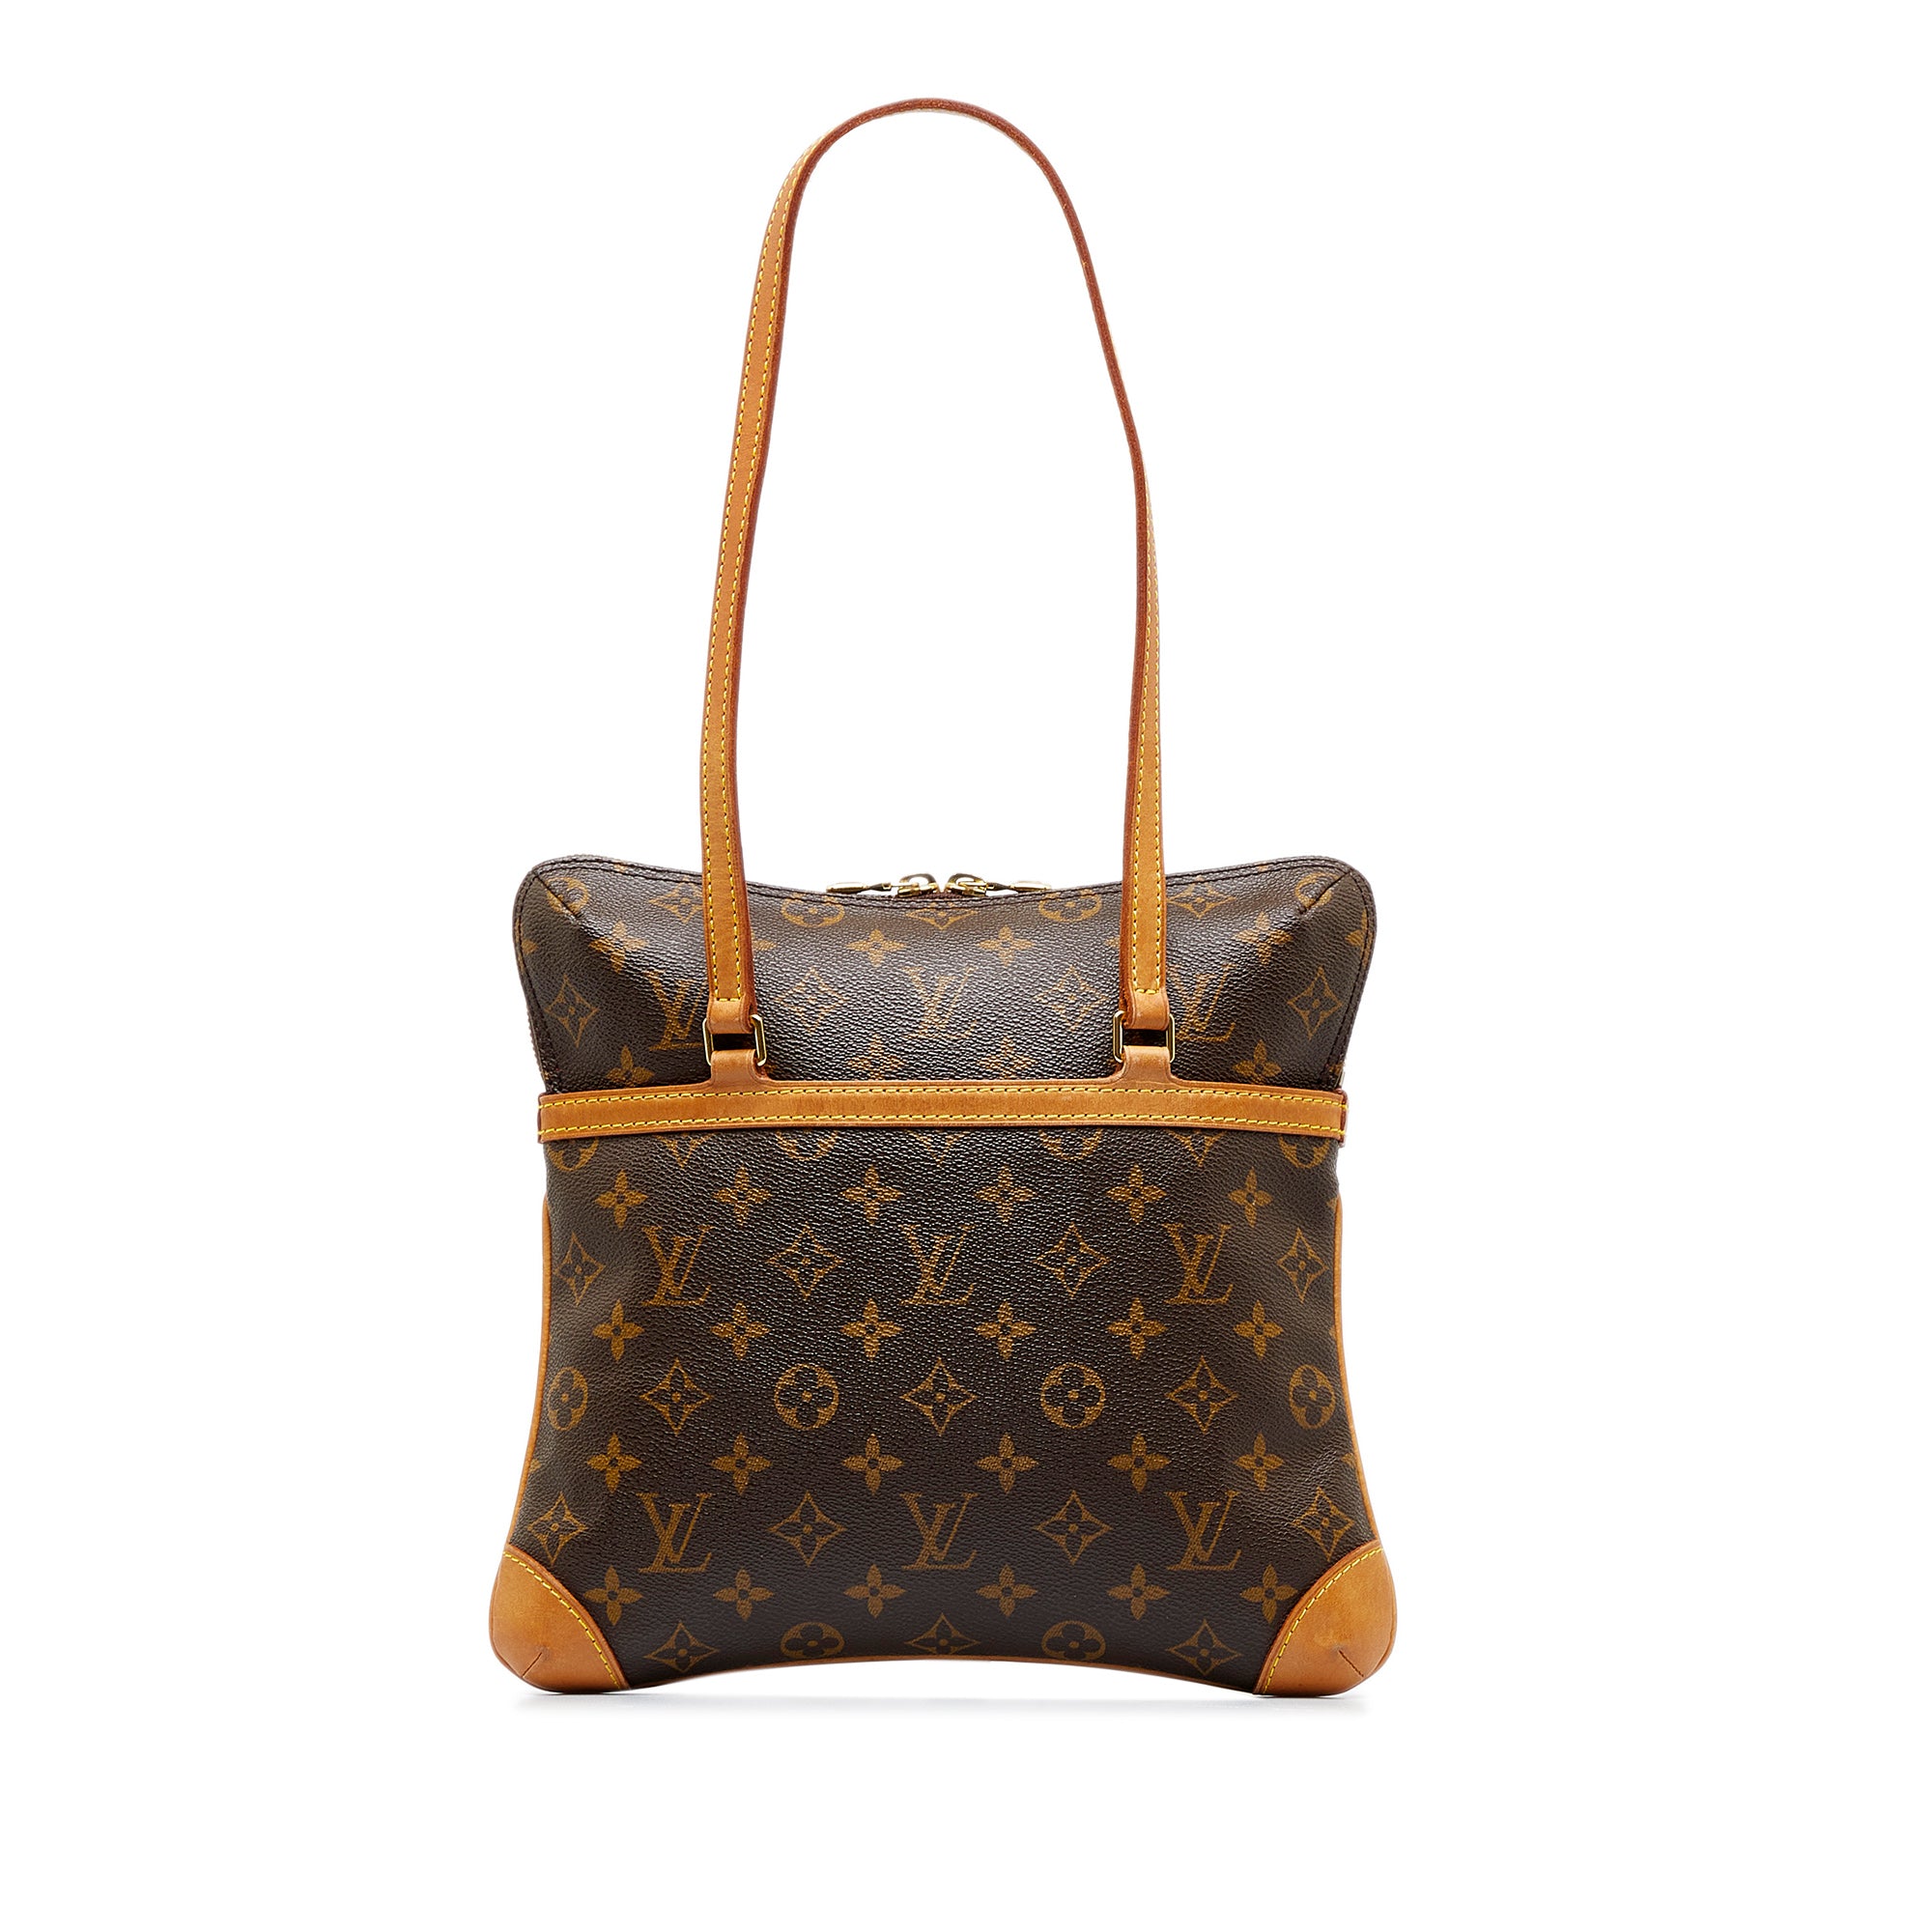 Louis Vuitton Canvas Exterior Bags & Handbags for Women